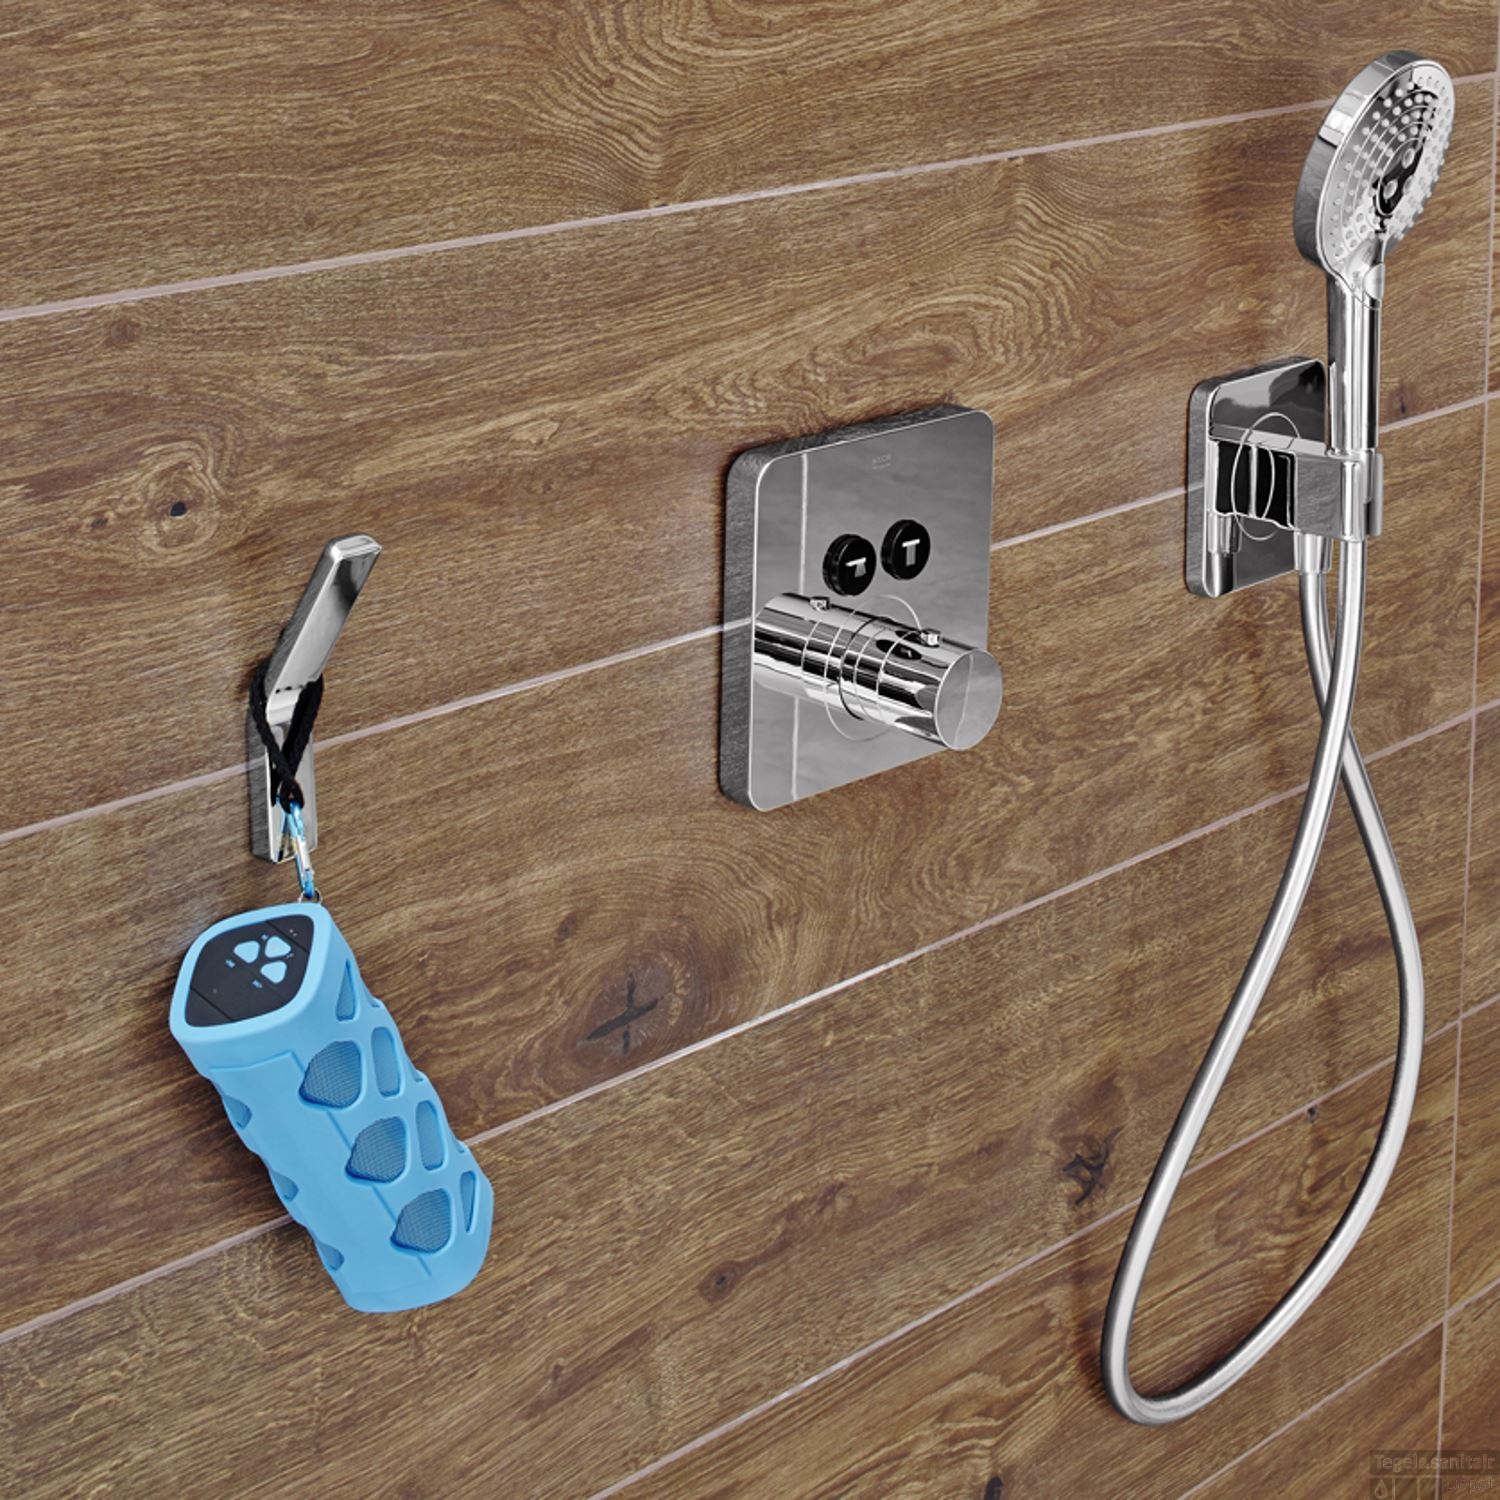 Douchen met muziek! Bluetooth speaker voor de badkamer van Aquasound #badkamer #muziek #waterproof